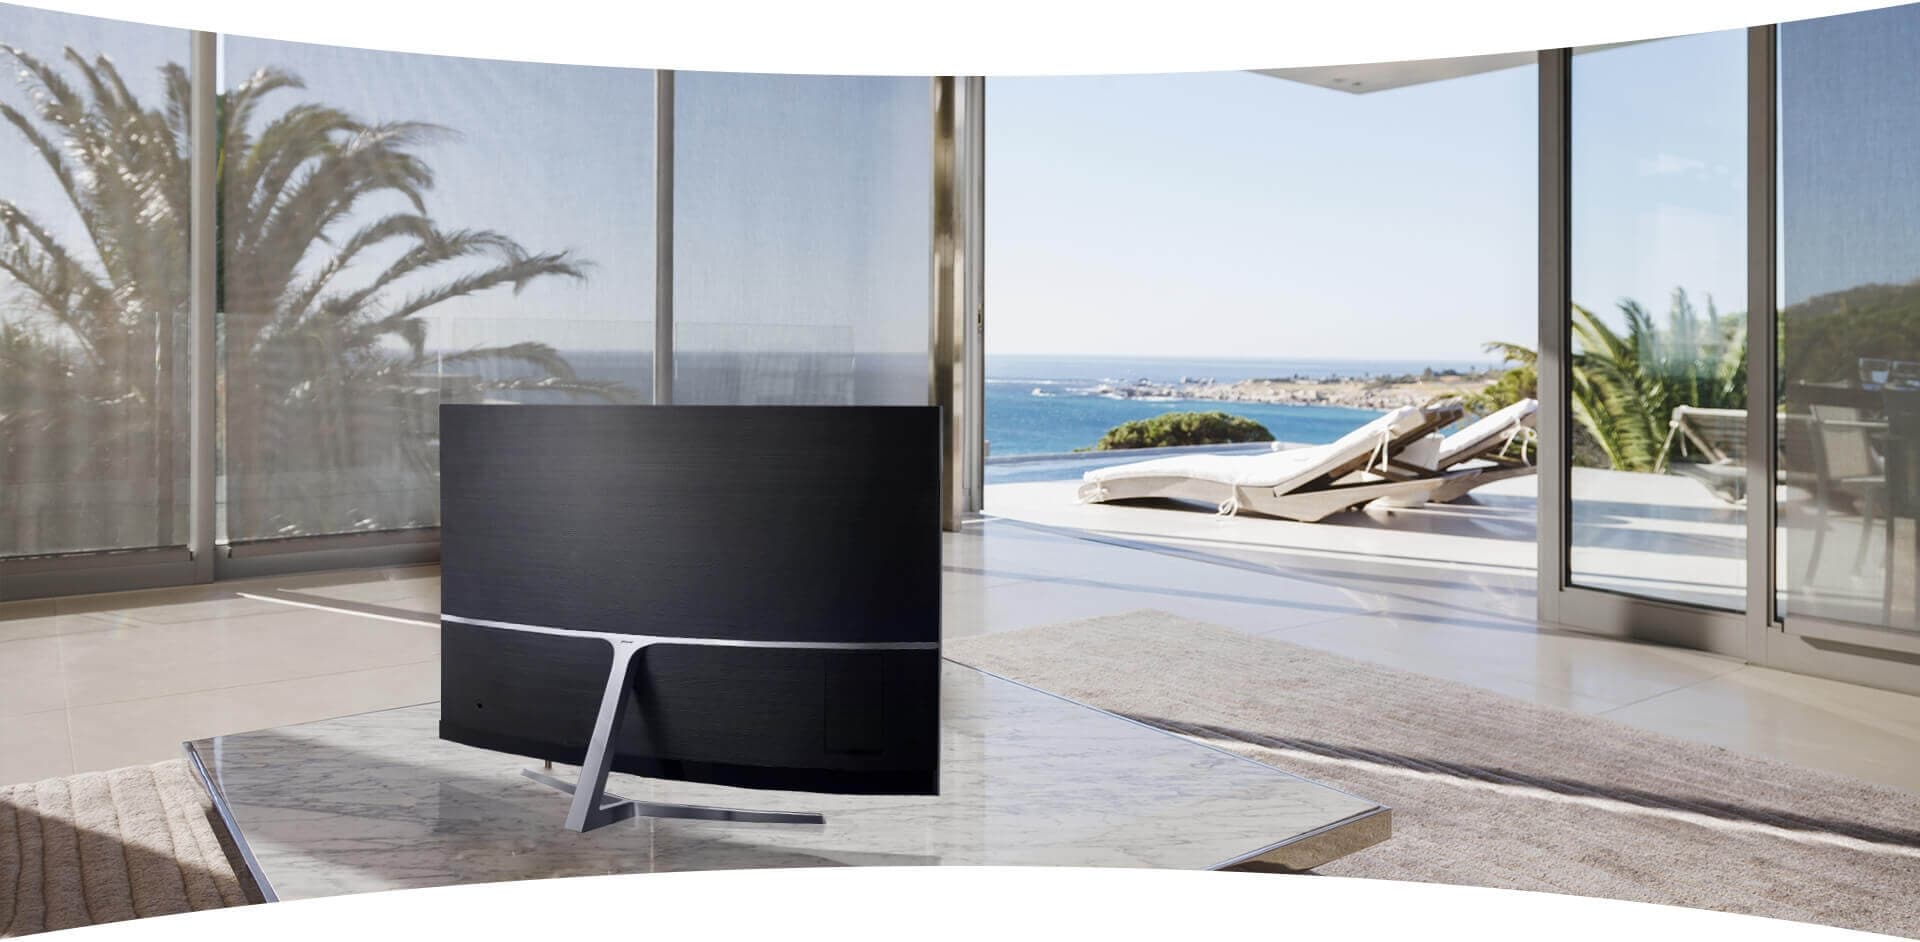 Un téléviseur Samsung est installé au milieu d’un salon et représente un élément du décor élégant.